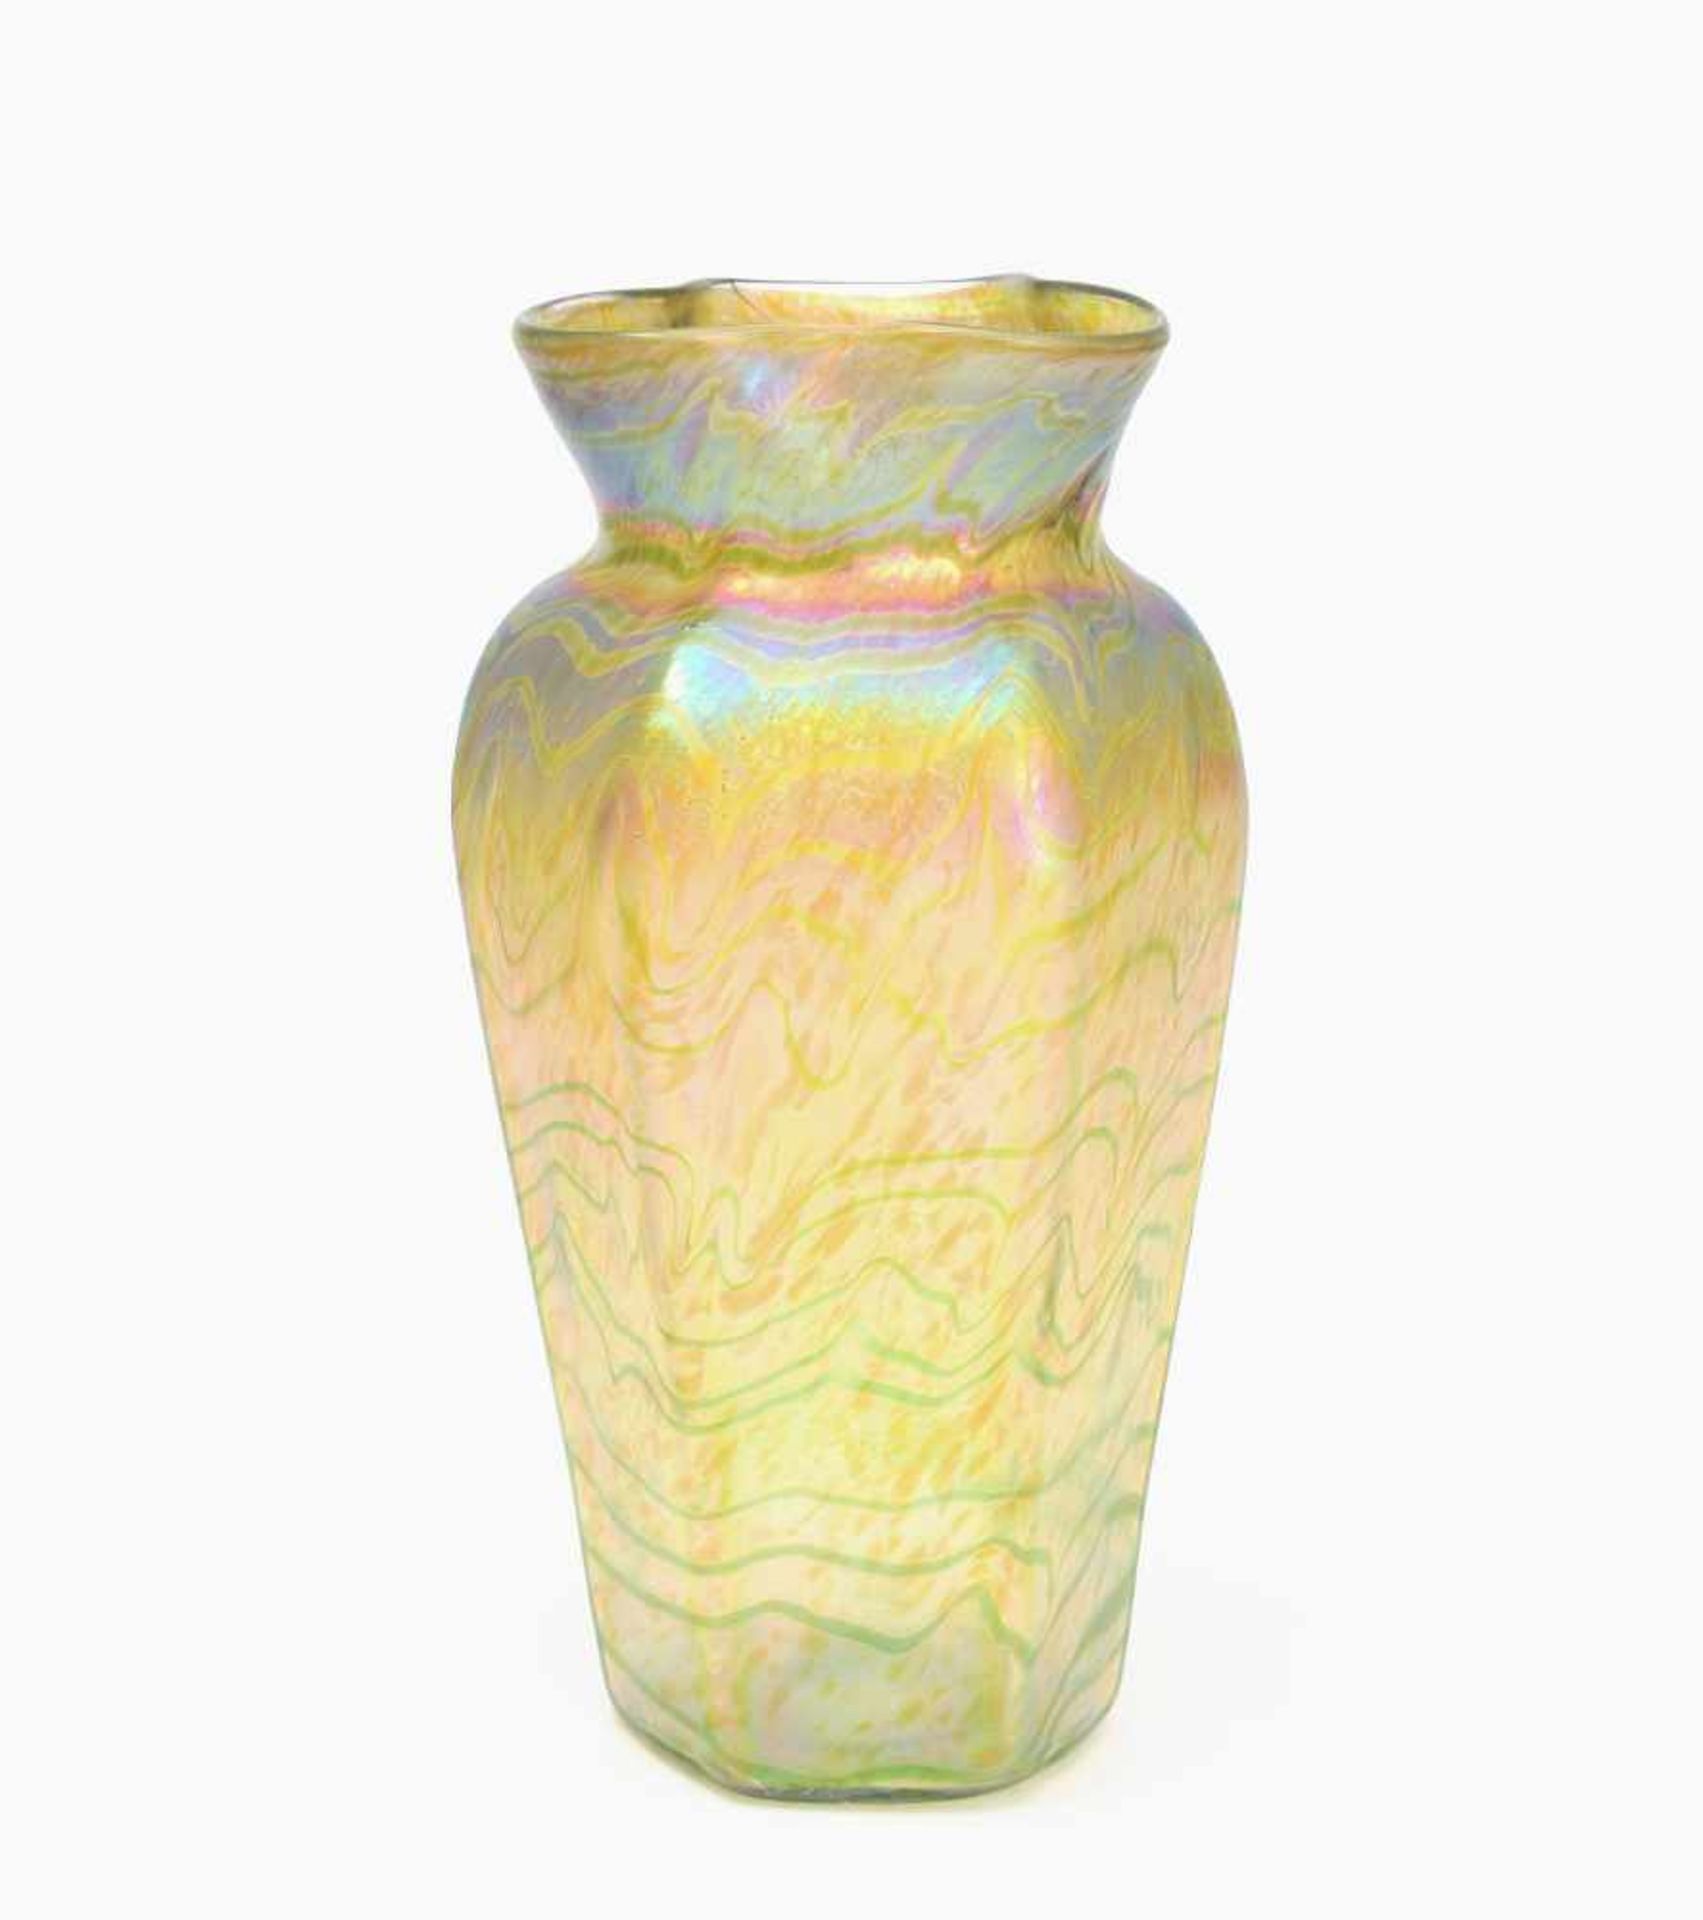 BöhmenUm/nach 1900. Vase. Farbloses Glas mit eingeschmolzenen Silbergelbkröseln, mit grünen Fäden